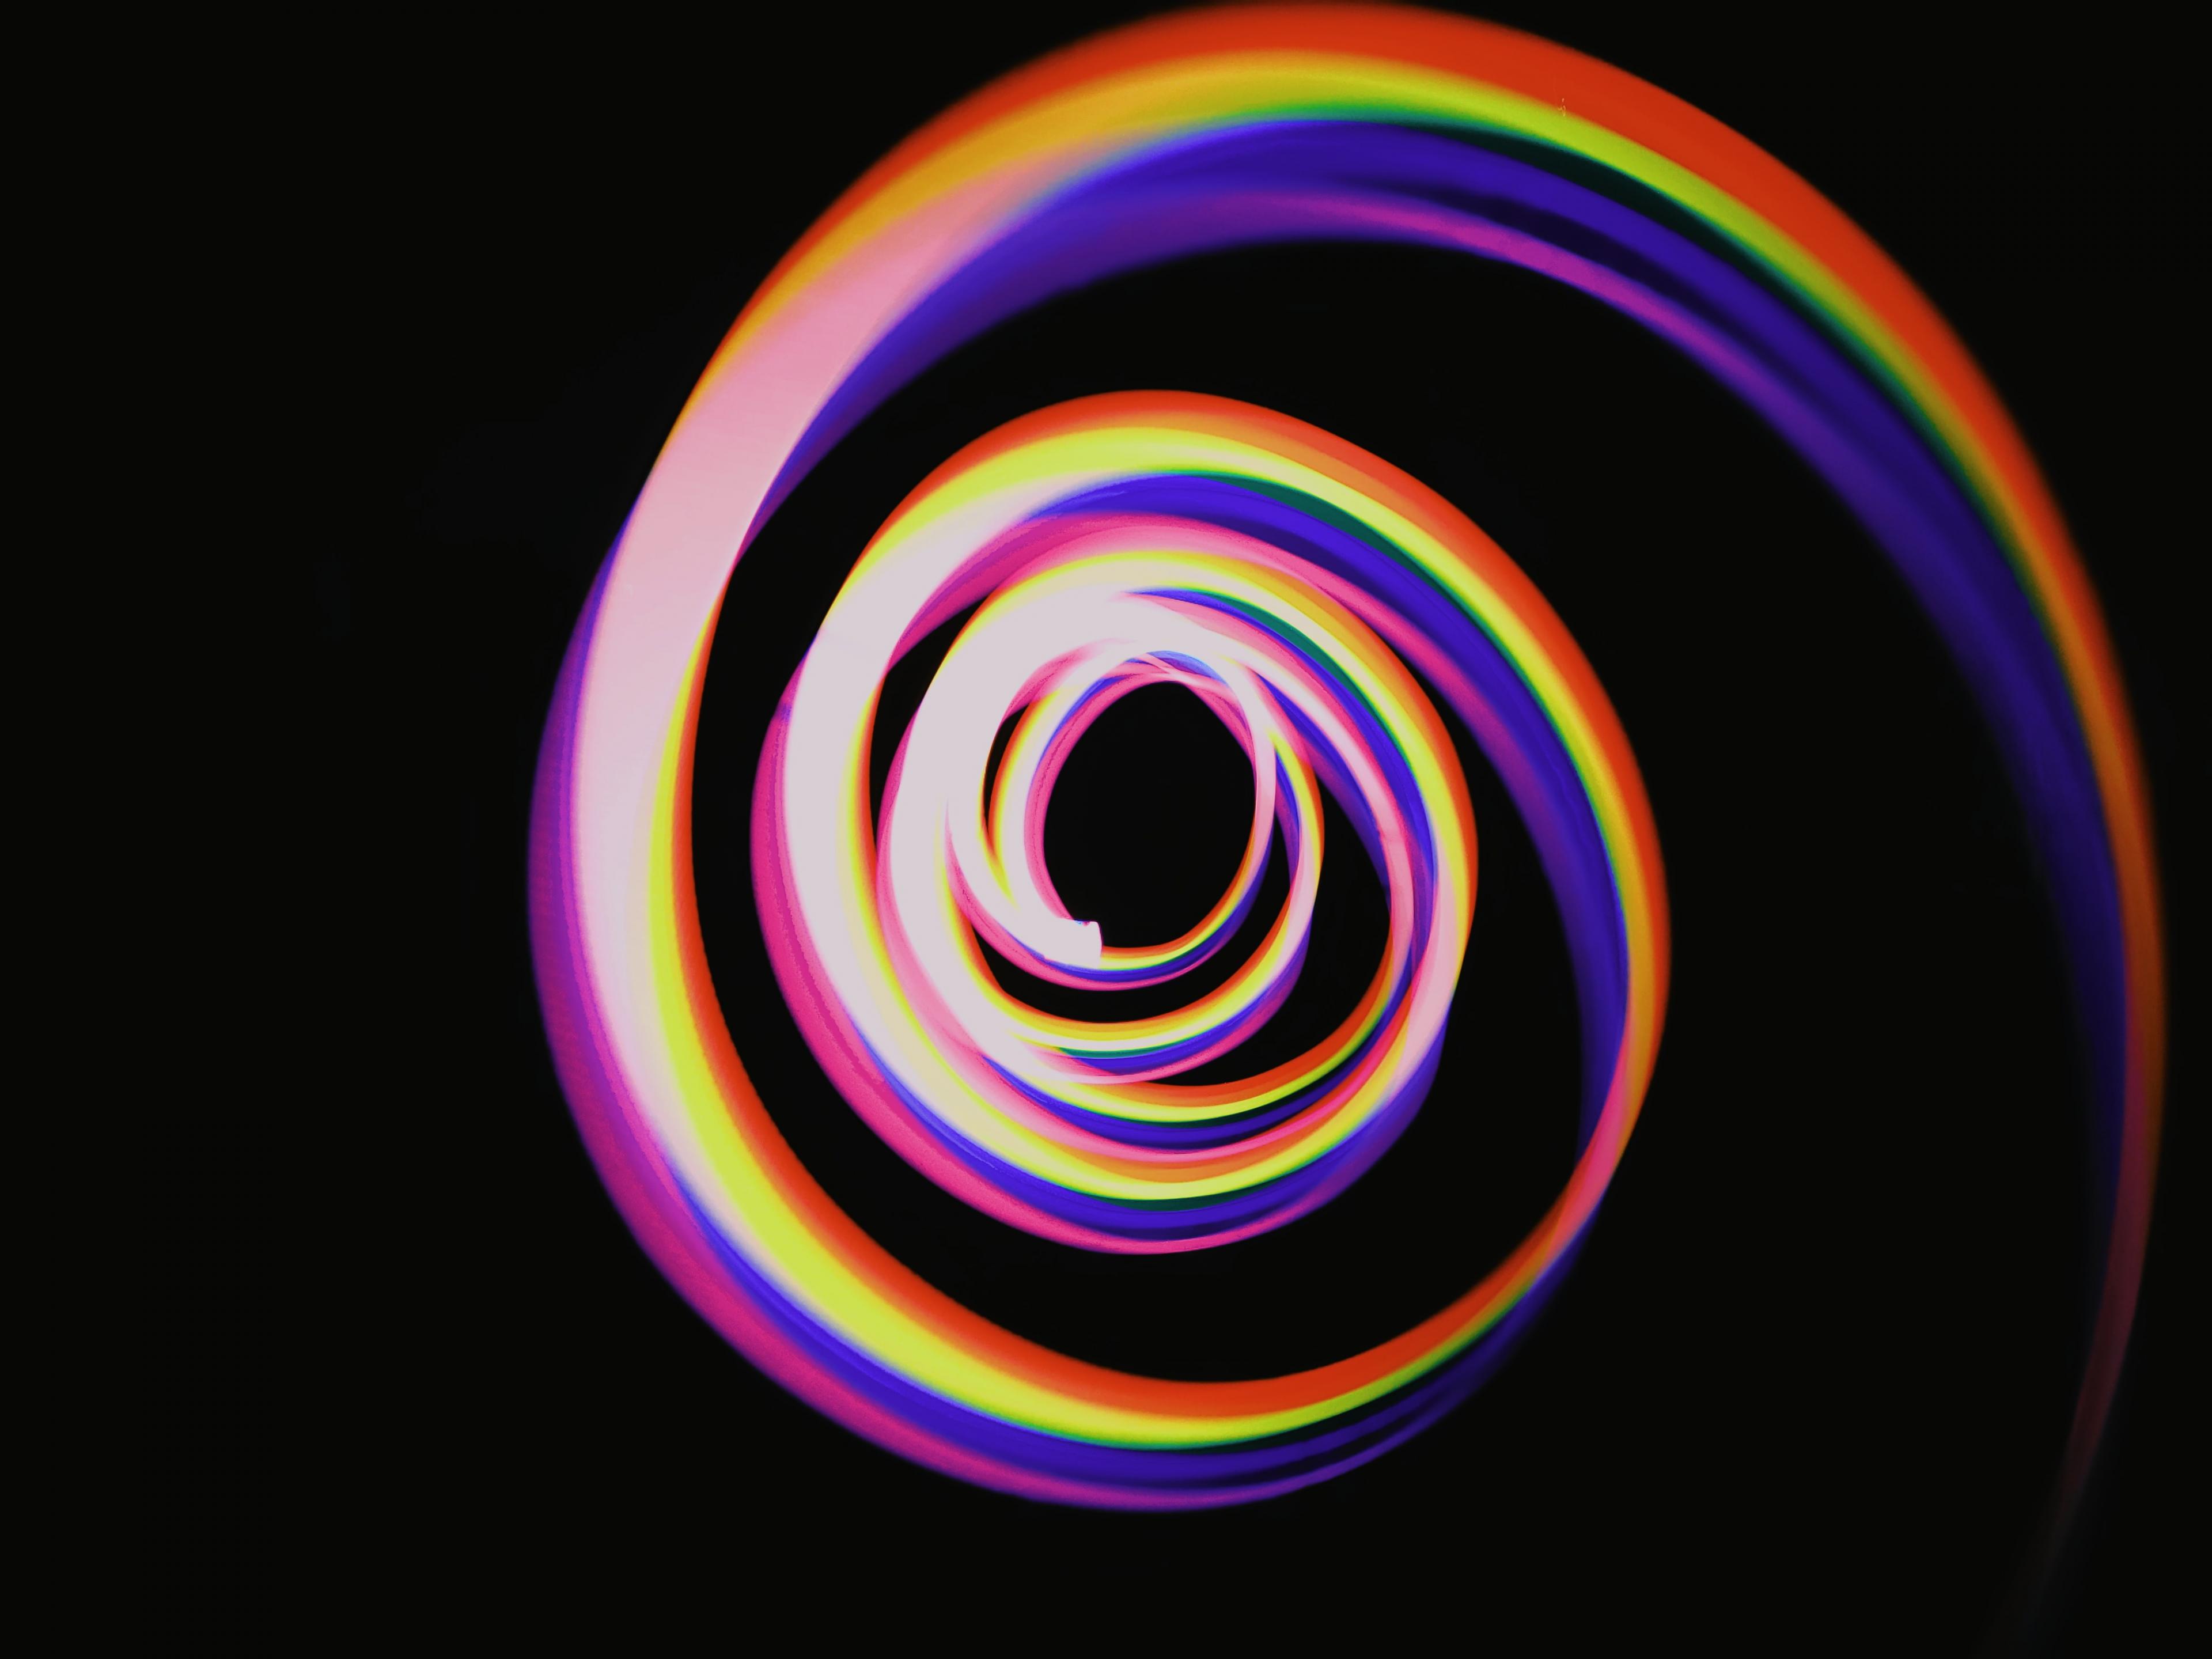 A spiral of rainbow-spectrum light